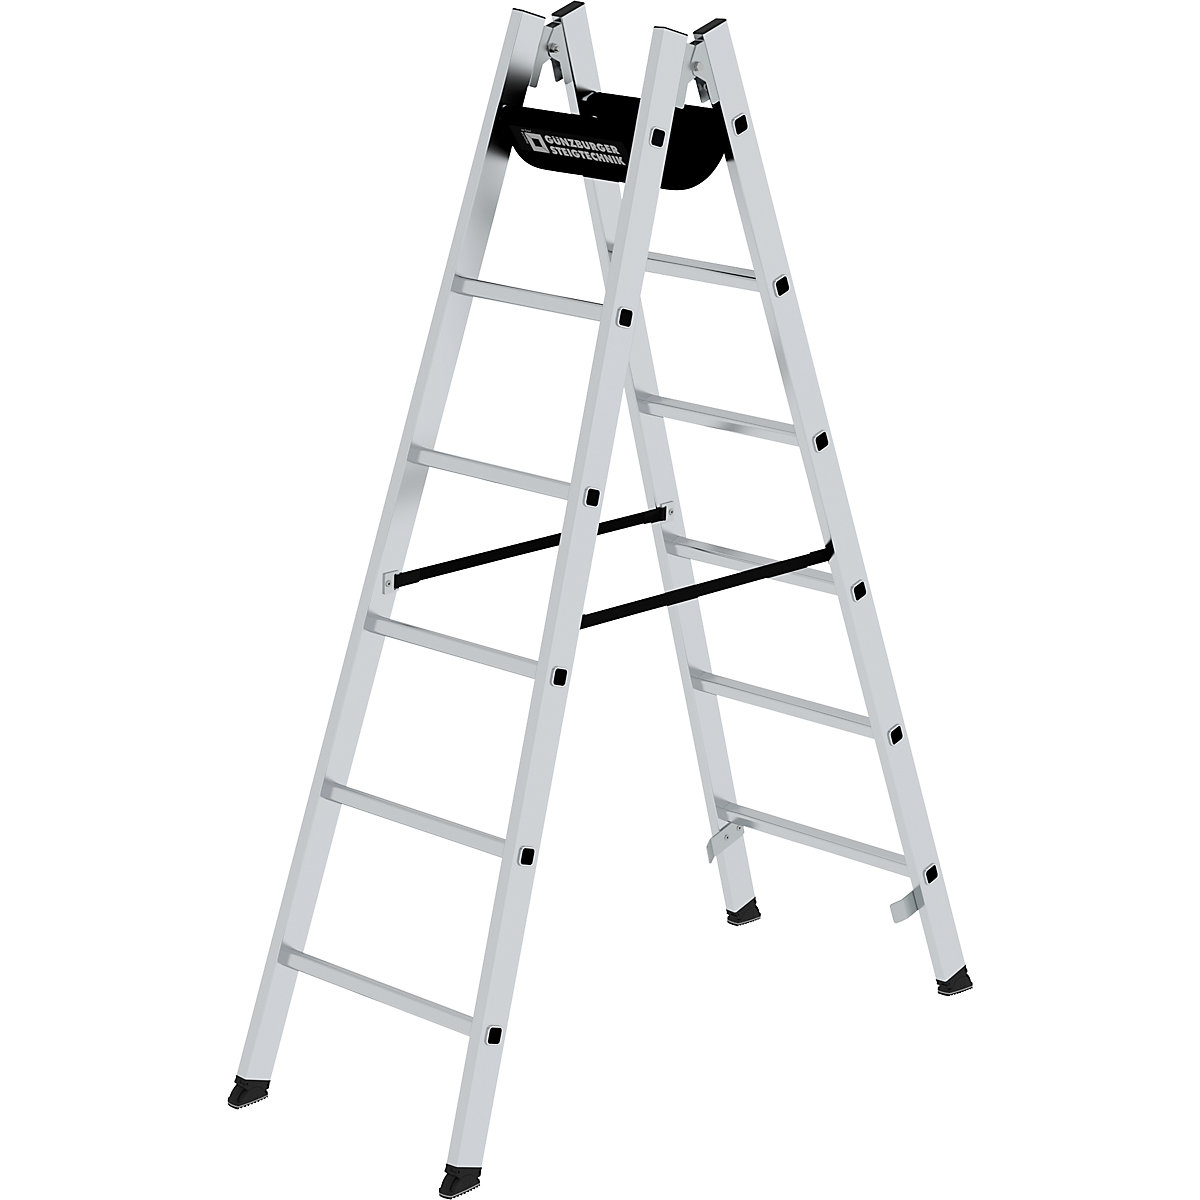 Bezpečnostný rebrík s priečkami, pochôdzny z oboch strán - MUNK